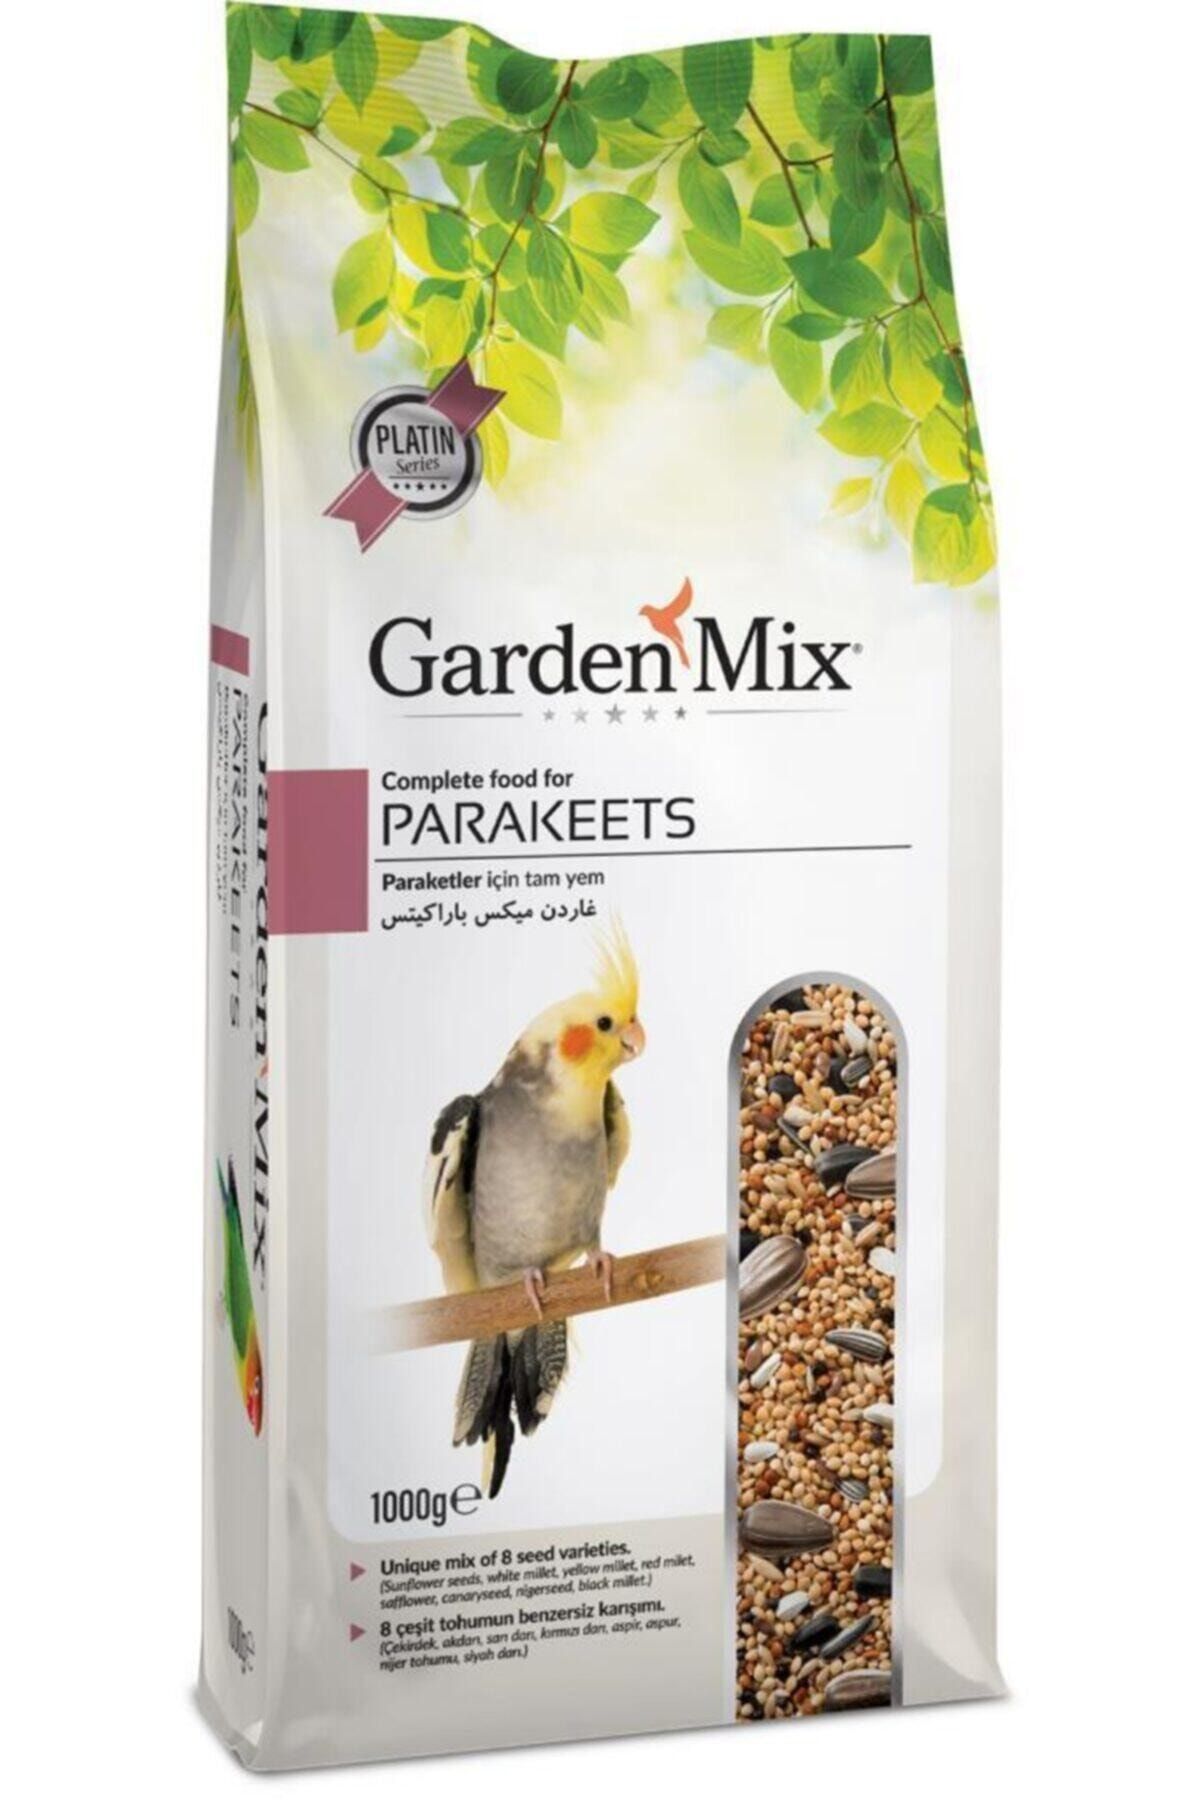 Gardenmix Platin Paraket Sultan-cennet Papağanı Yemi 1kg